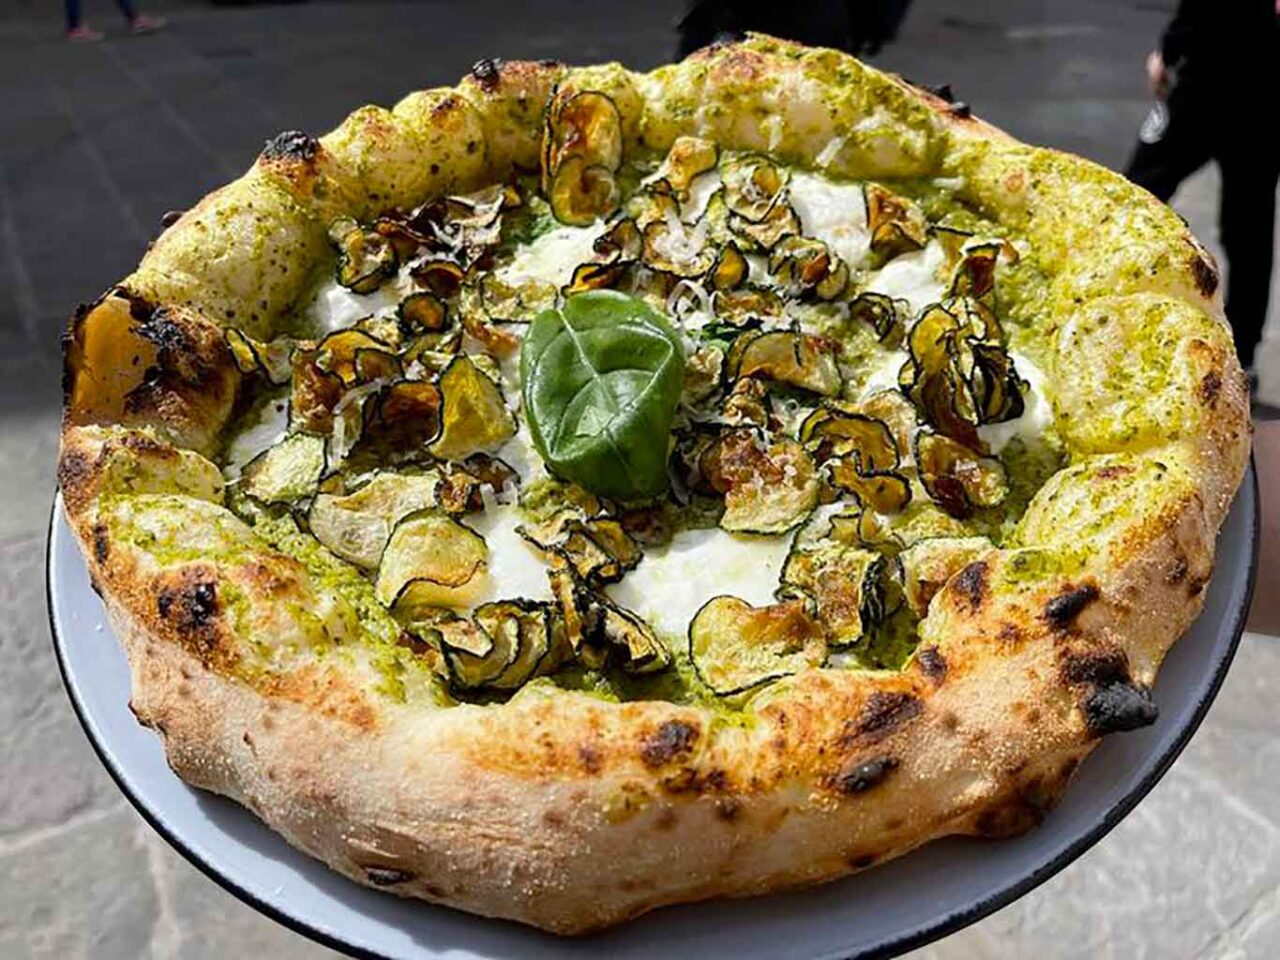 pizze speciali al pizza village di Napoli: Nerano rivisitata